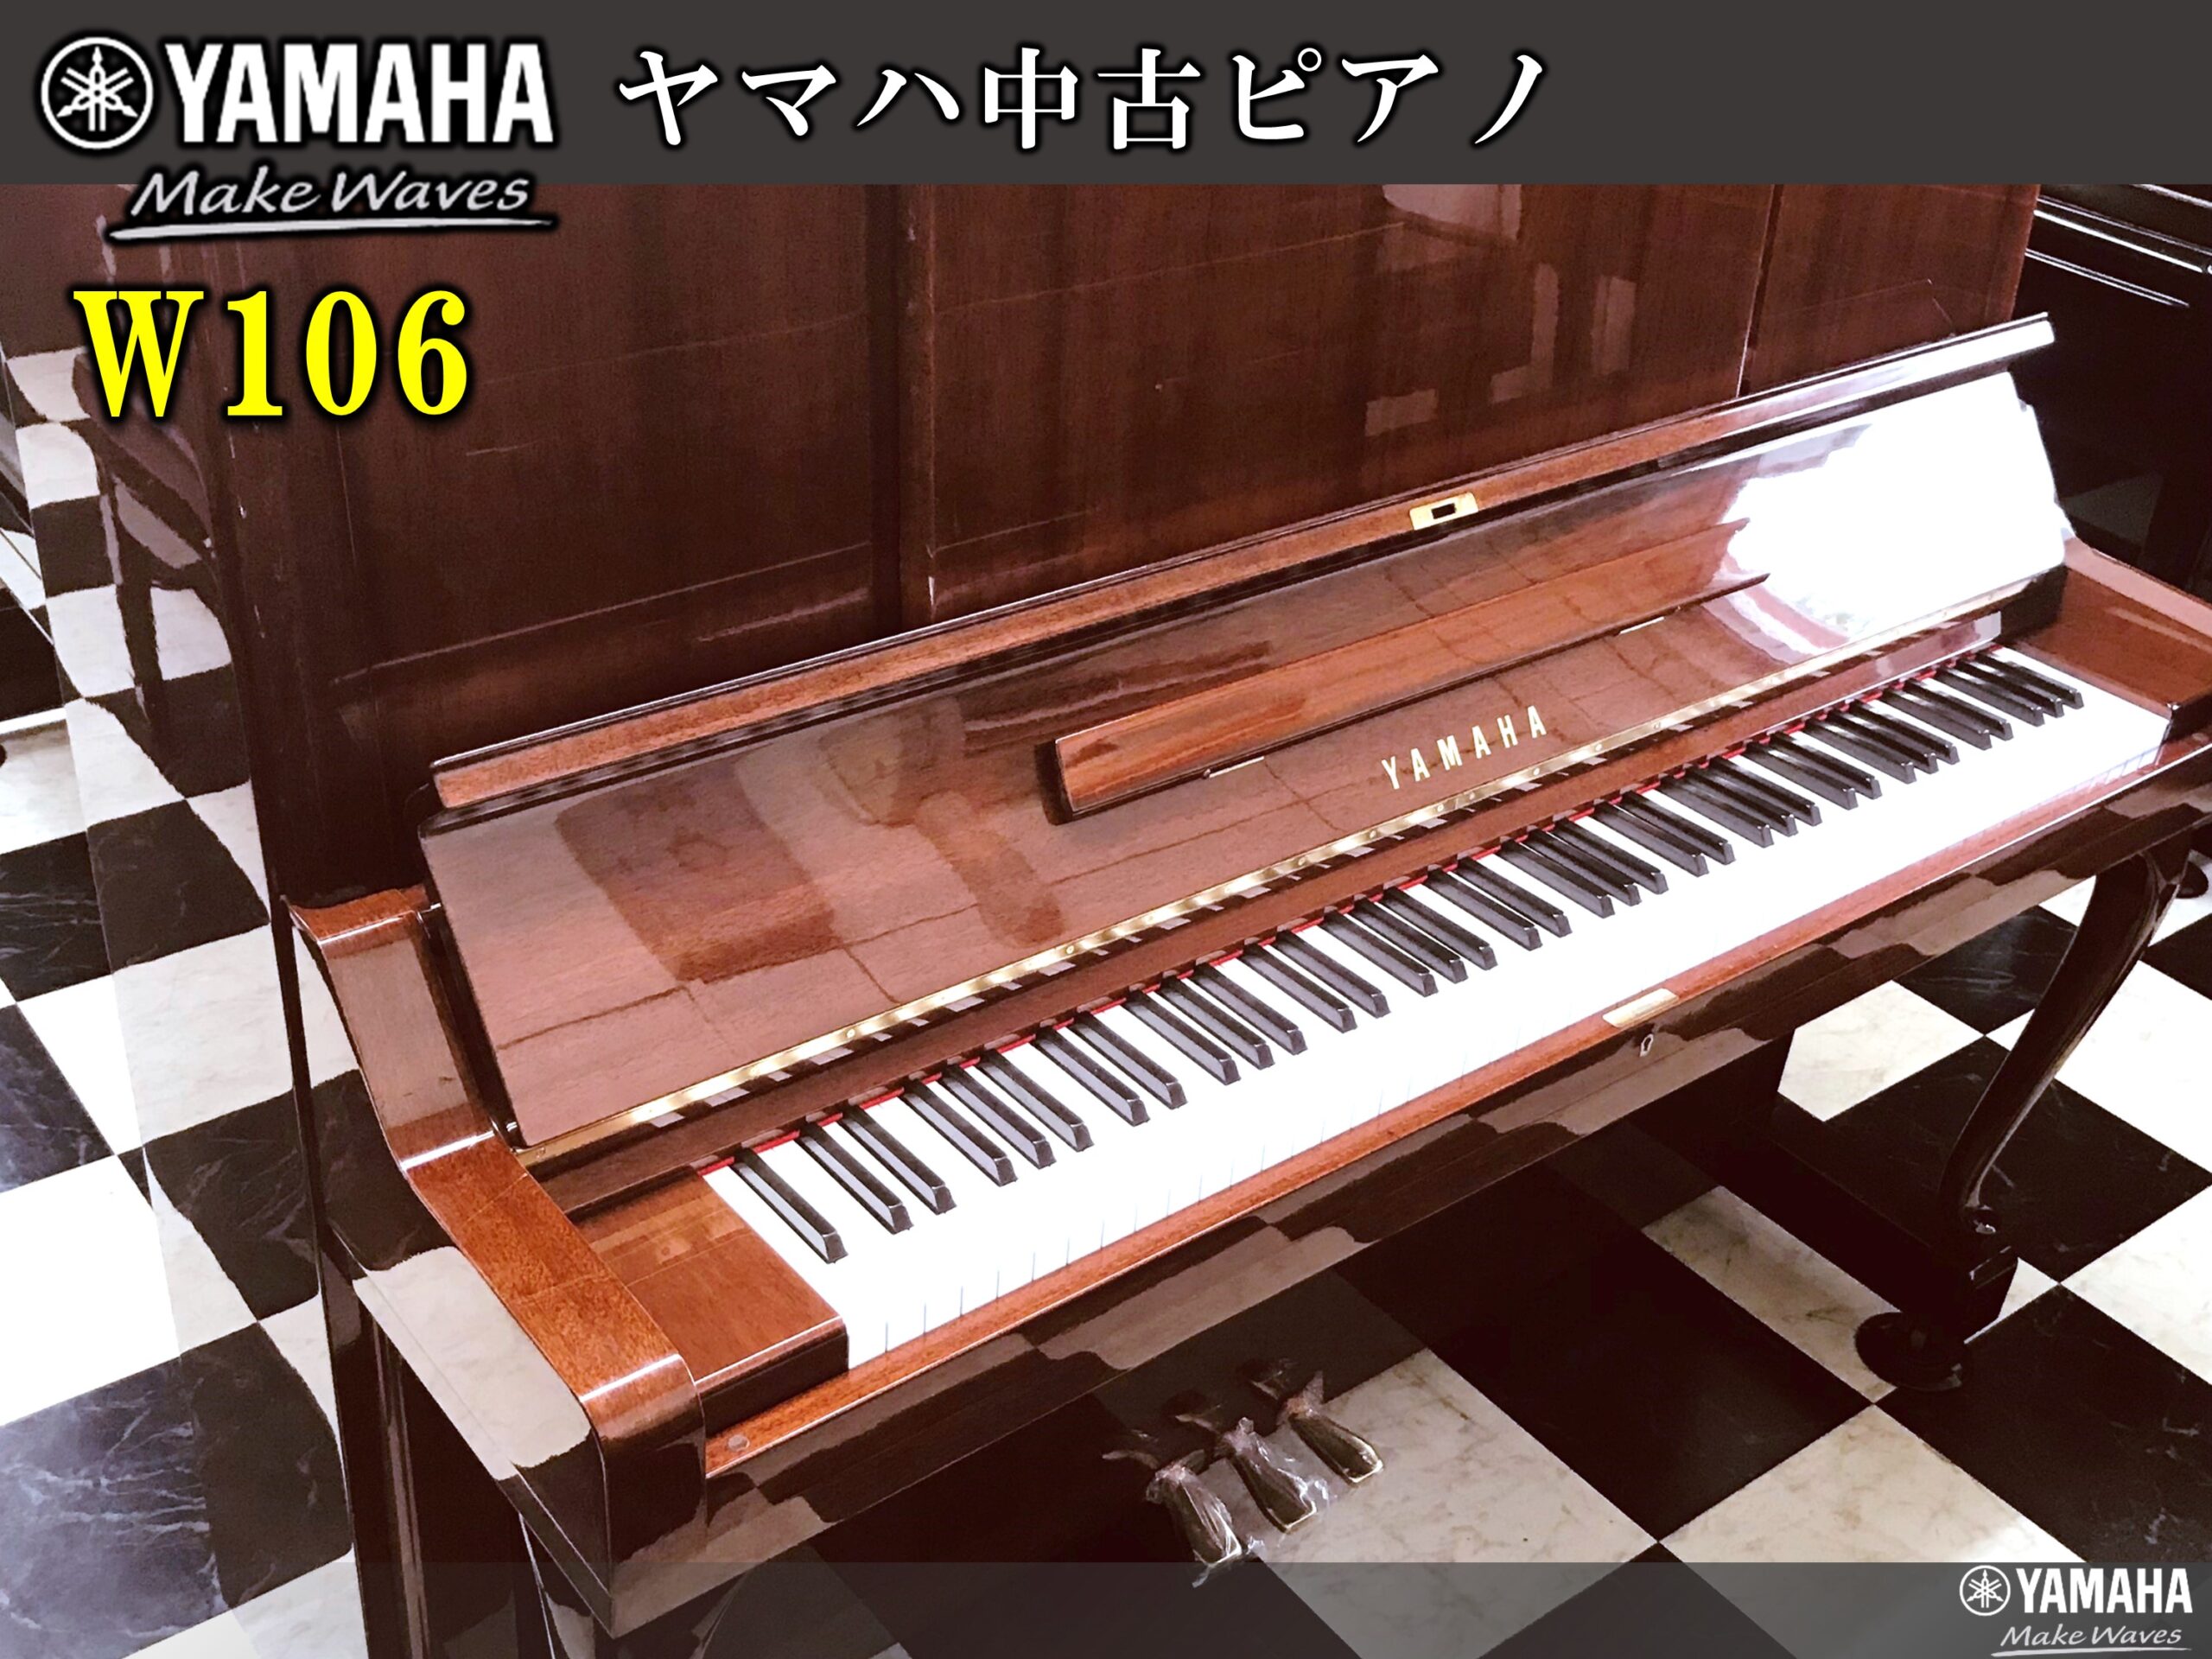 ヤマハ中古ピアノ W106 | 福岡のヤマハ中古ピアノなら株式会社フカノ楽器店